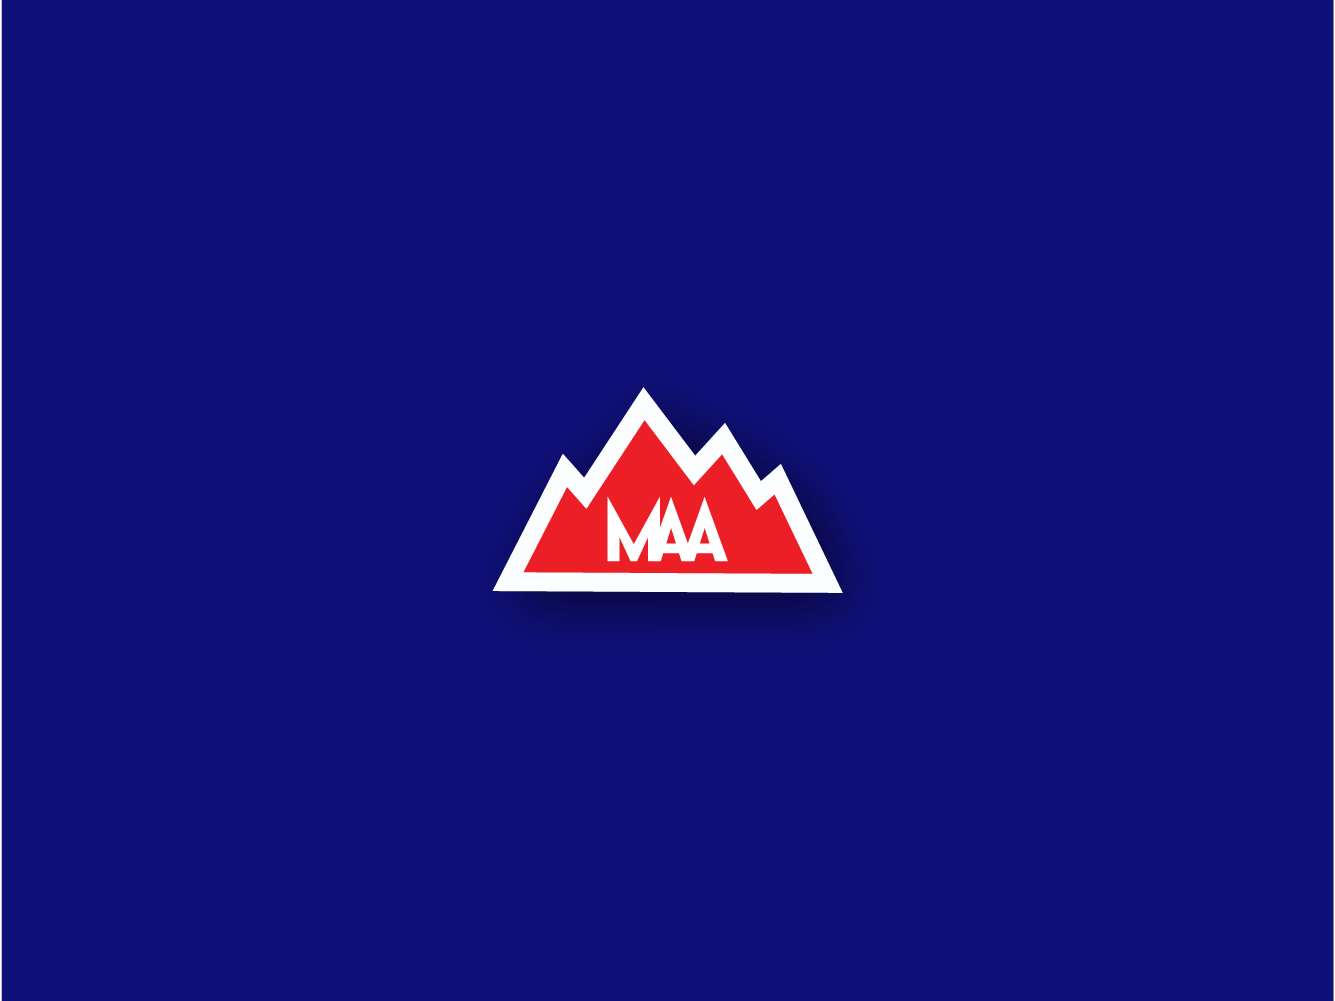 Maa Logo - MAA Logo design by Hicham Baghedoud on Dribbble